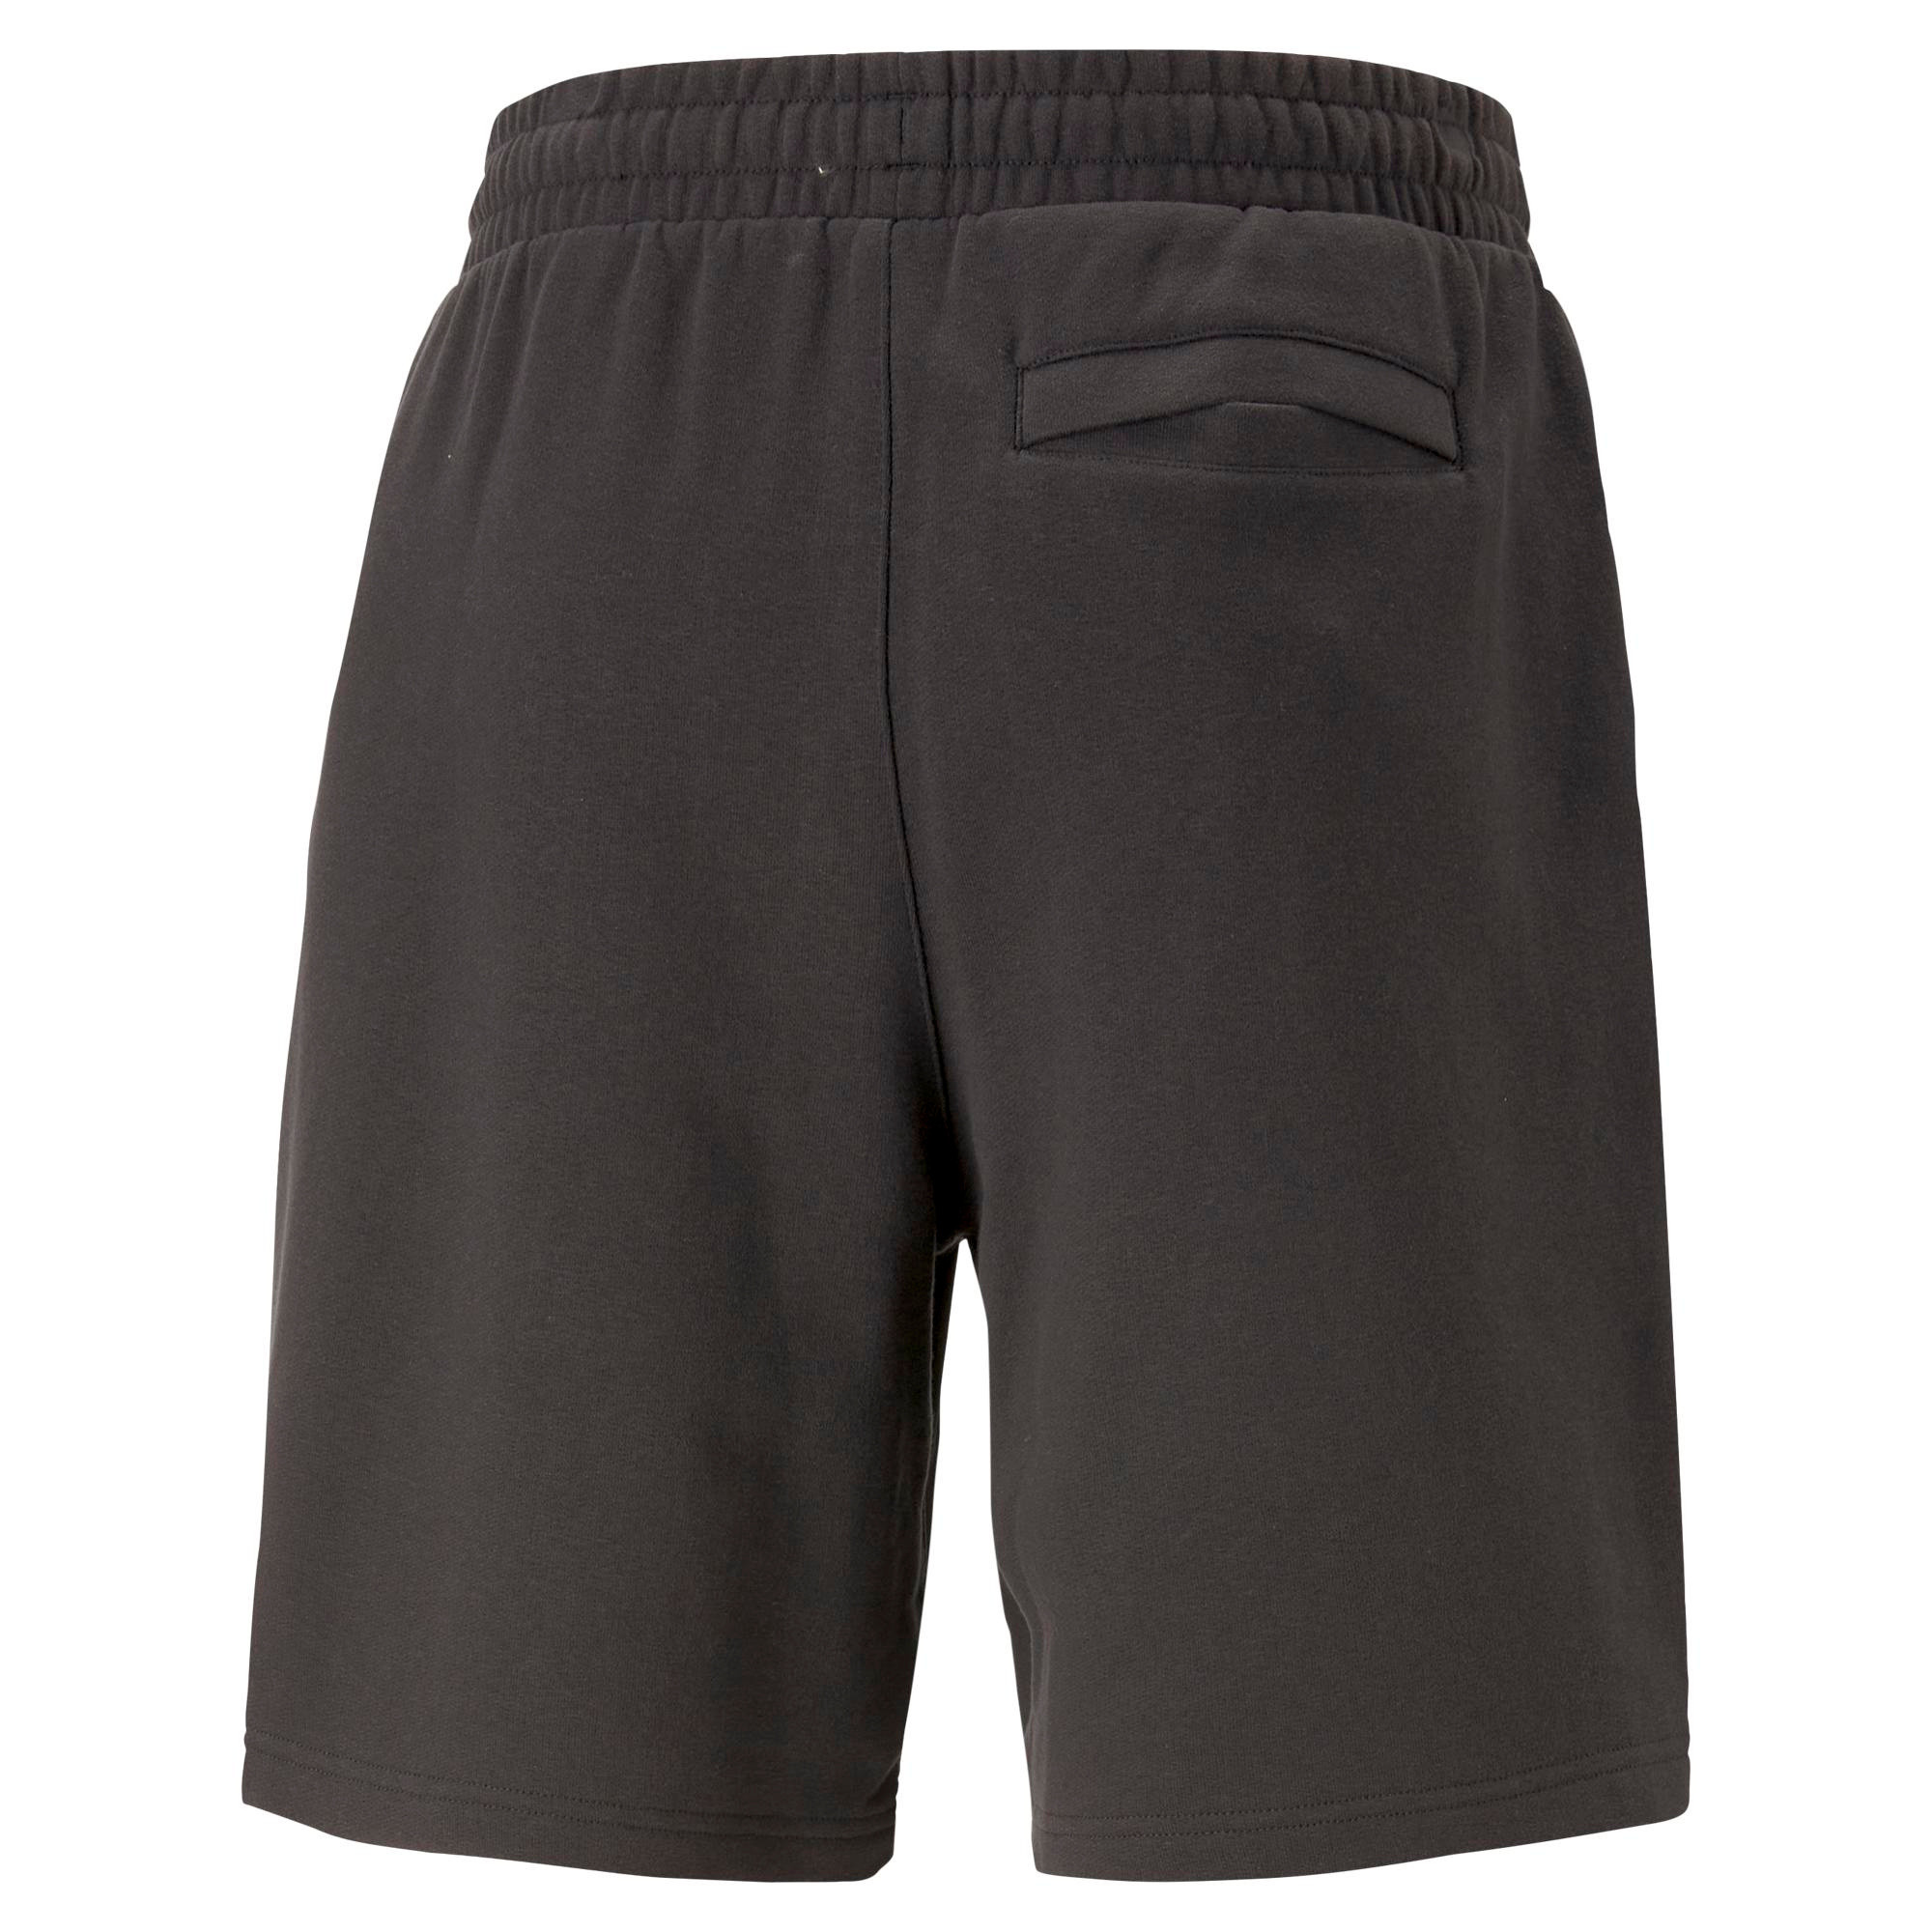 Puma - Cotton shorts, Black, large image number 1